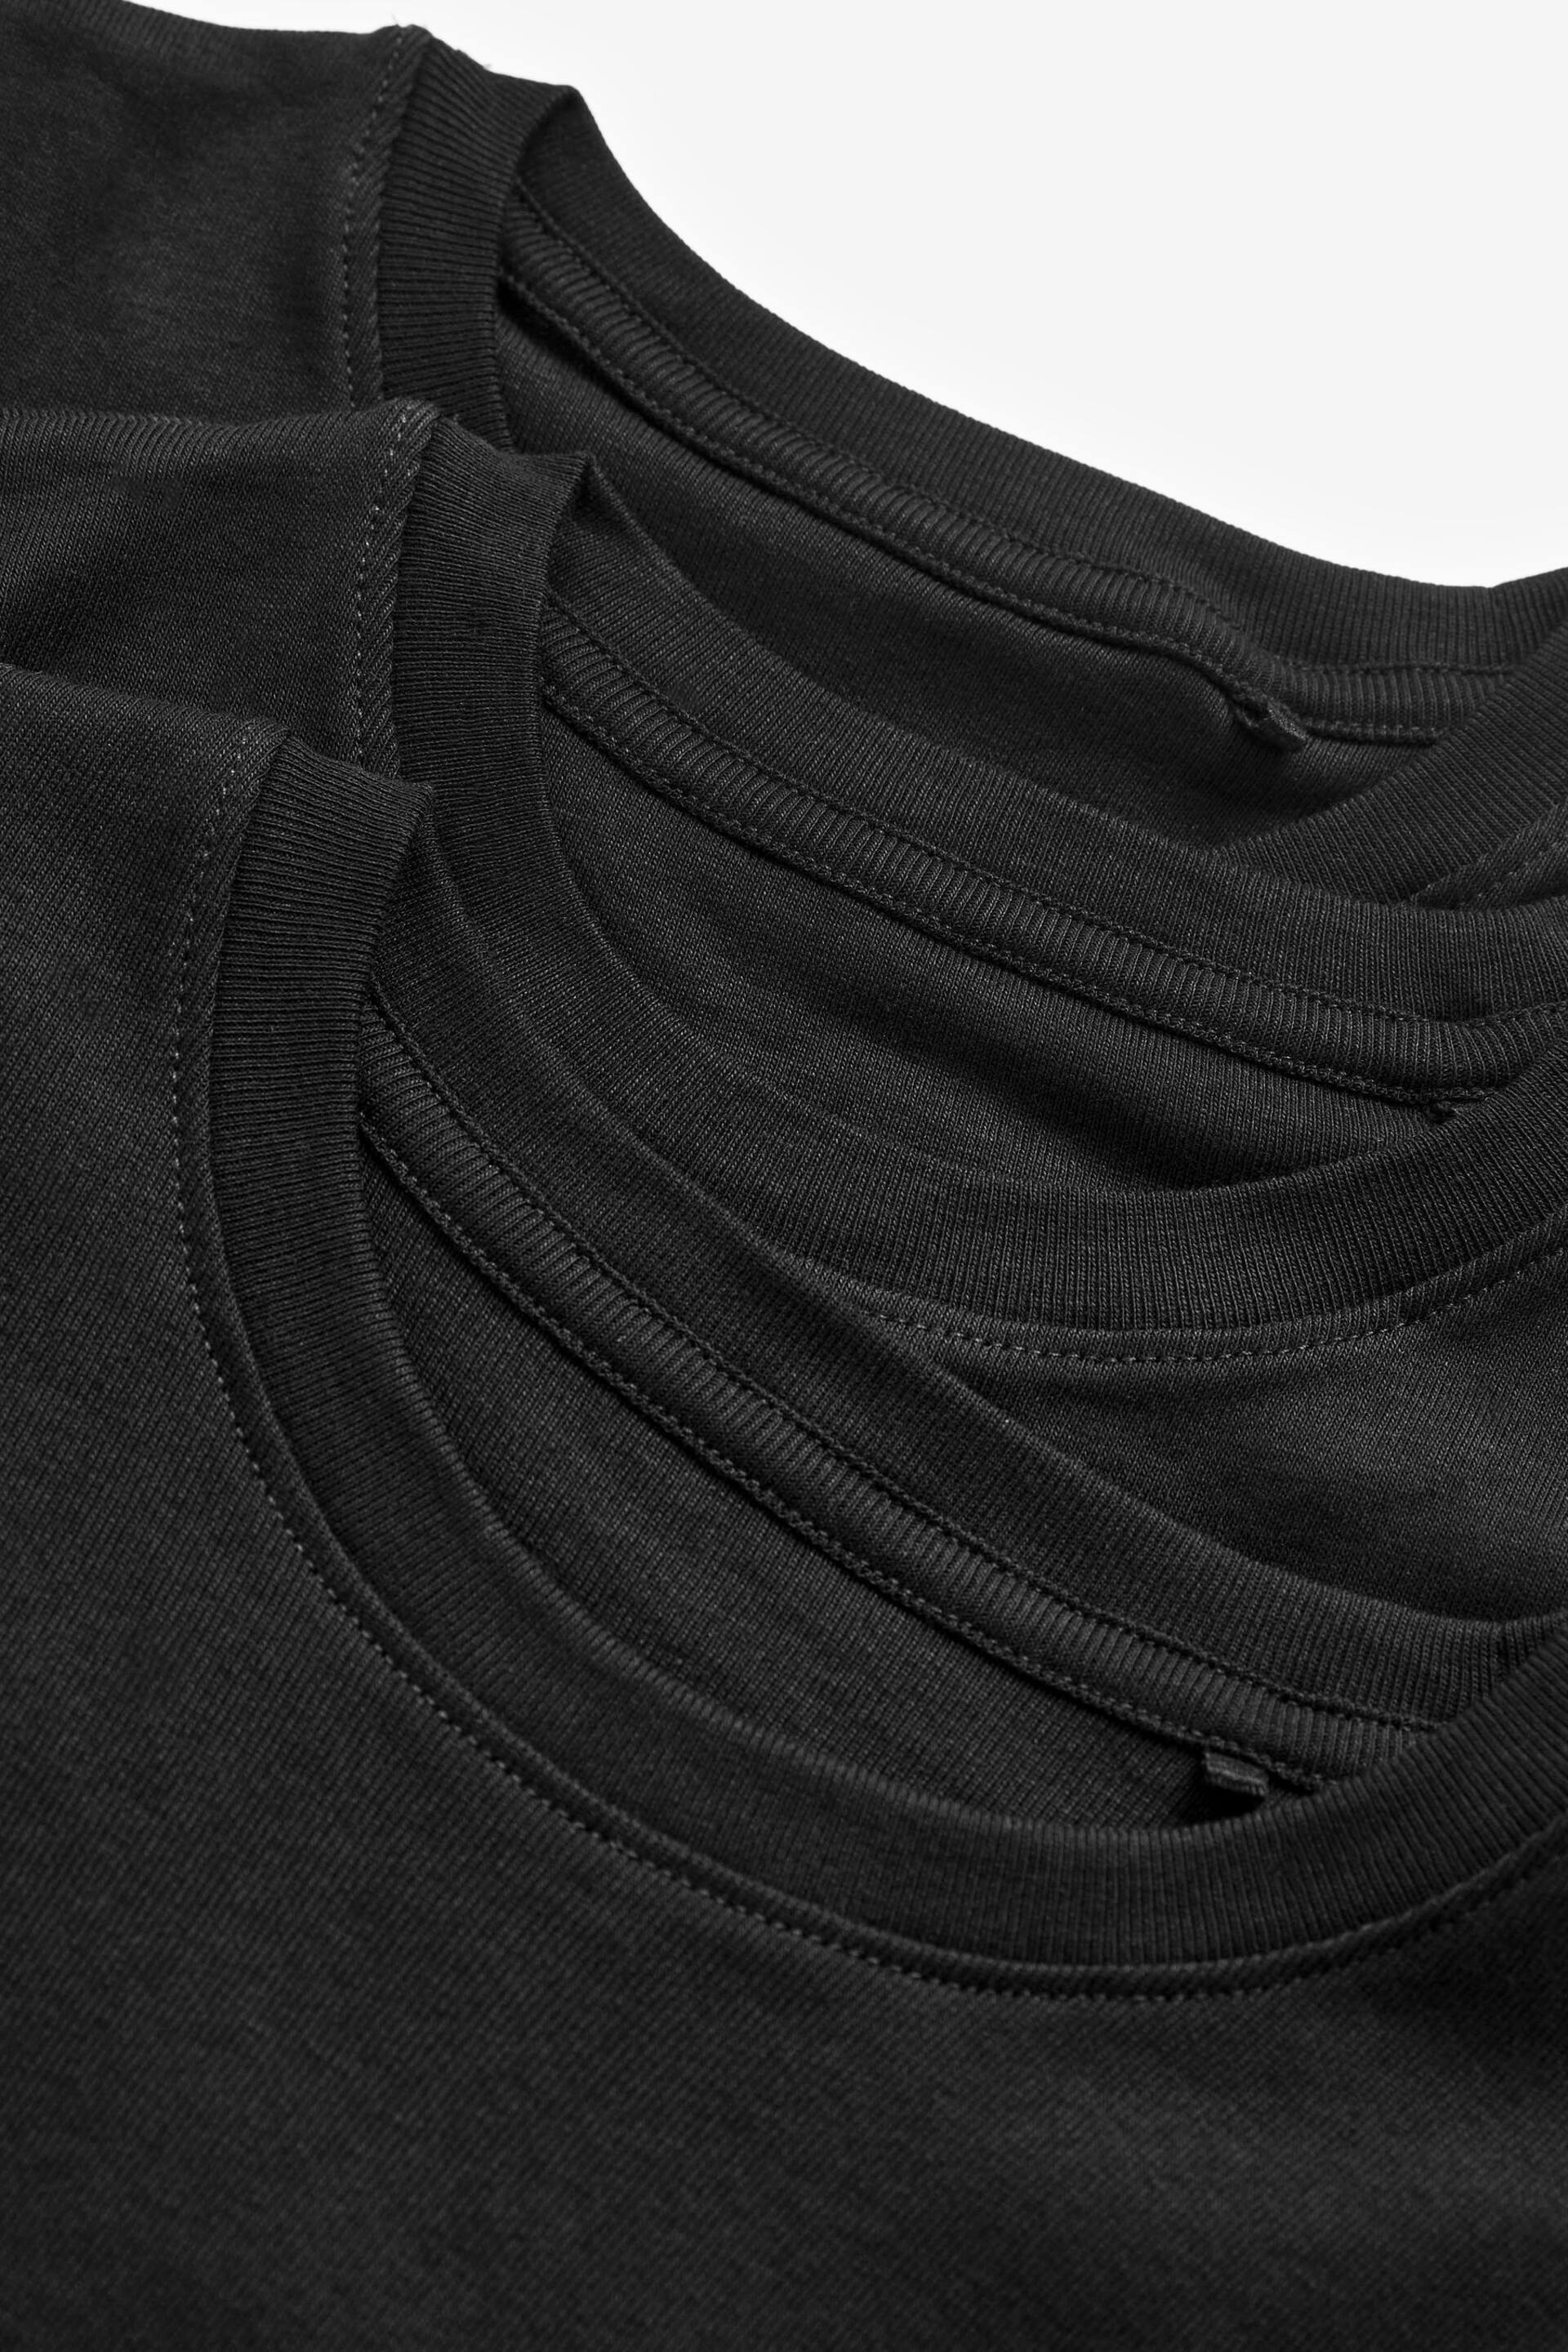 Black Short Sleeve Vest 3 Pack (1.5-16yrs) - Image 3 of 3